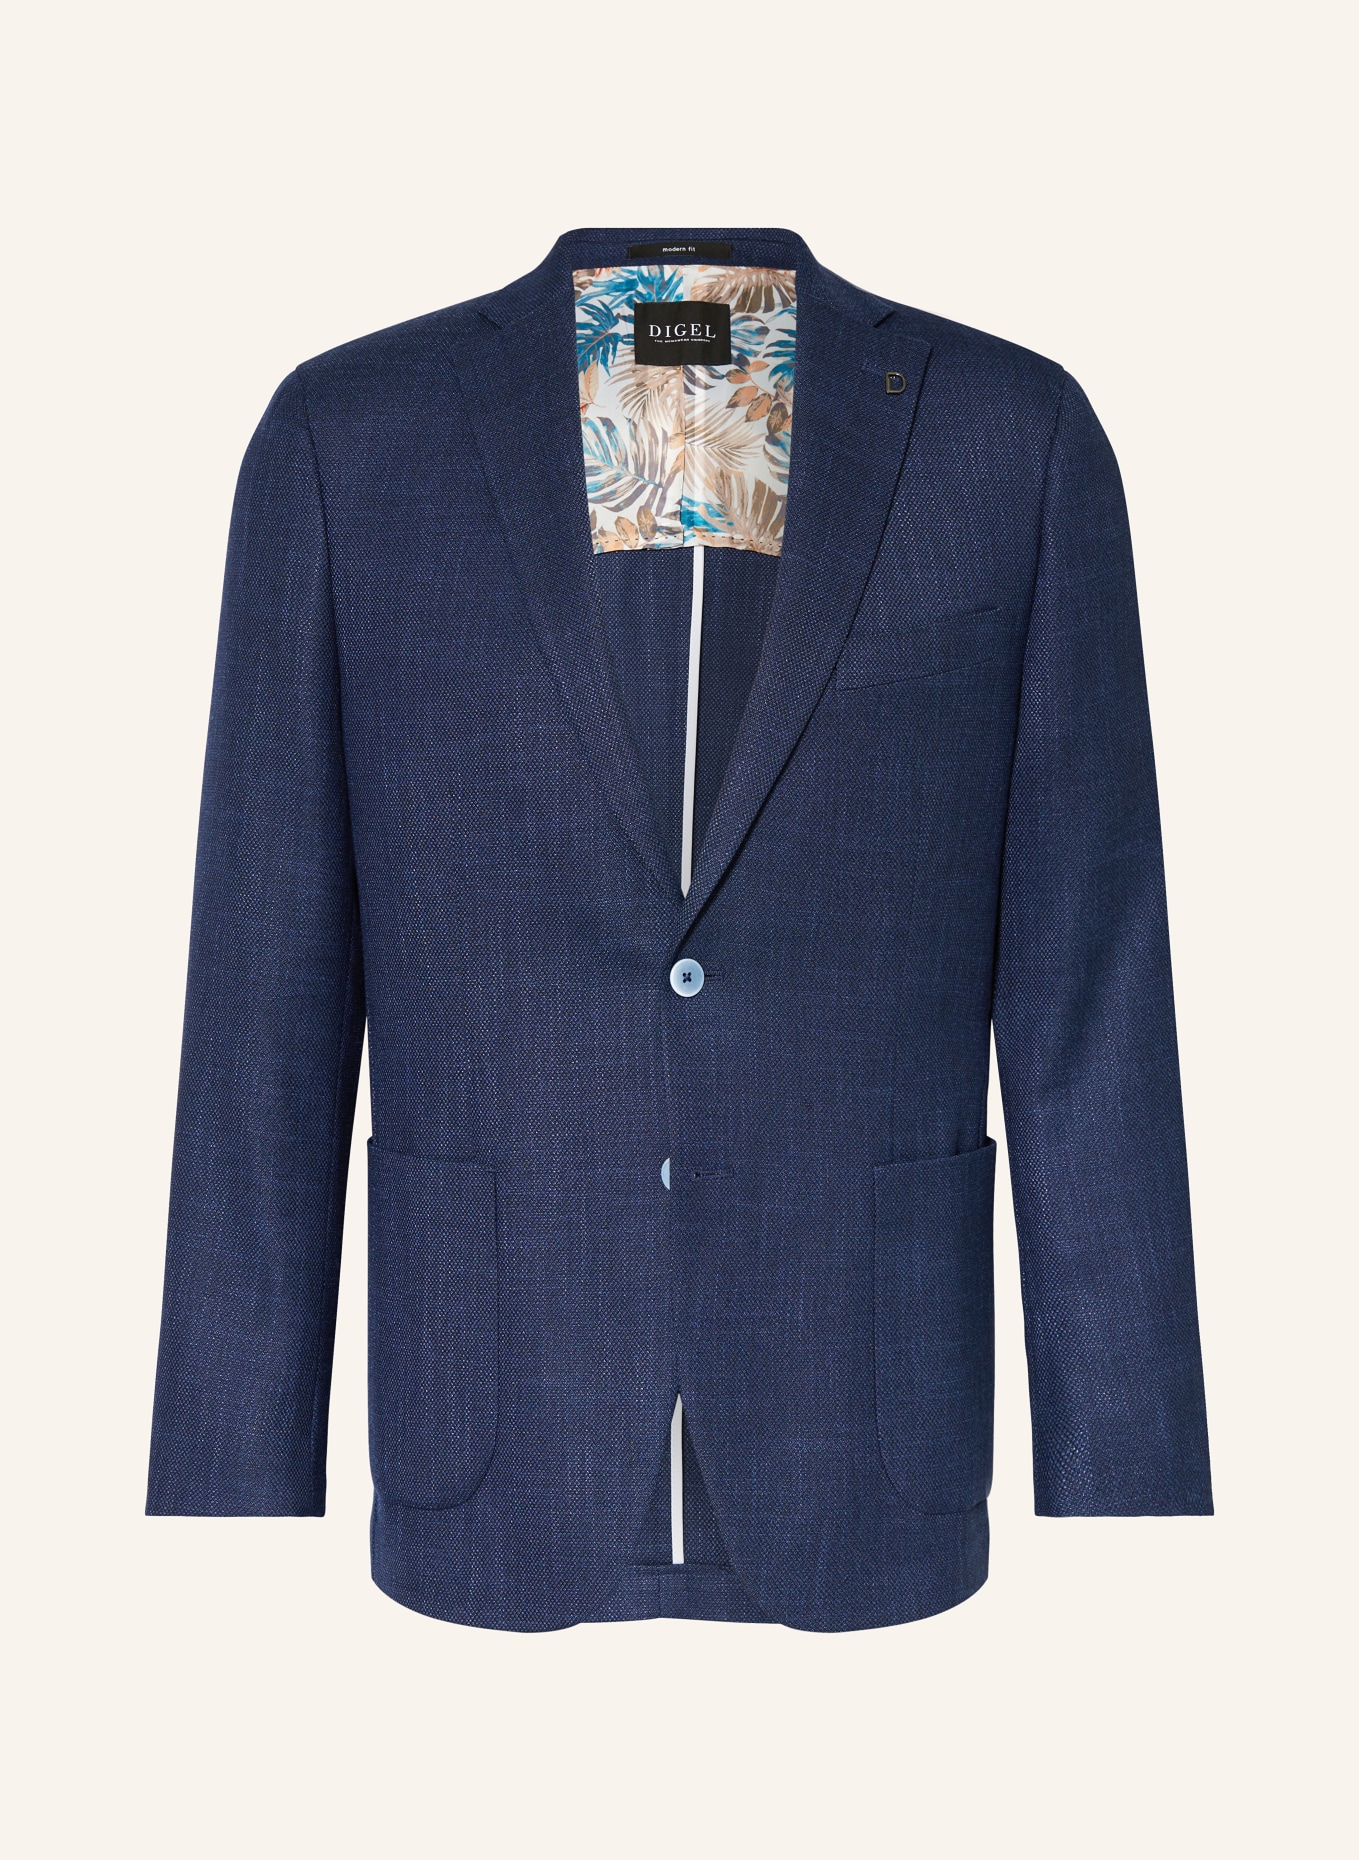 DIGEL Suit jacket EDWARD Regular Fit, Color: 22 BLAU (Image 1)